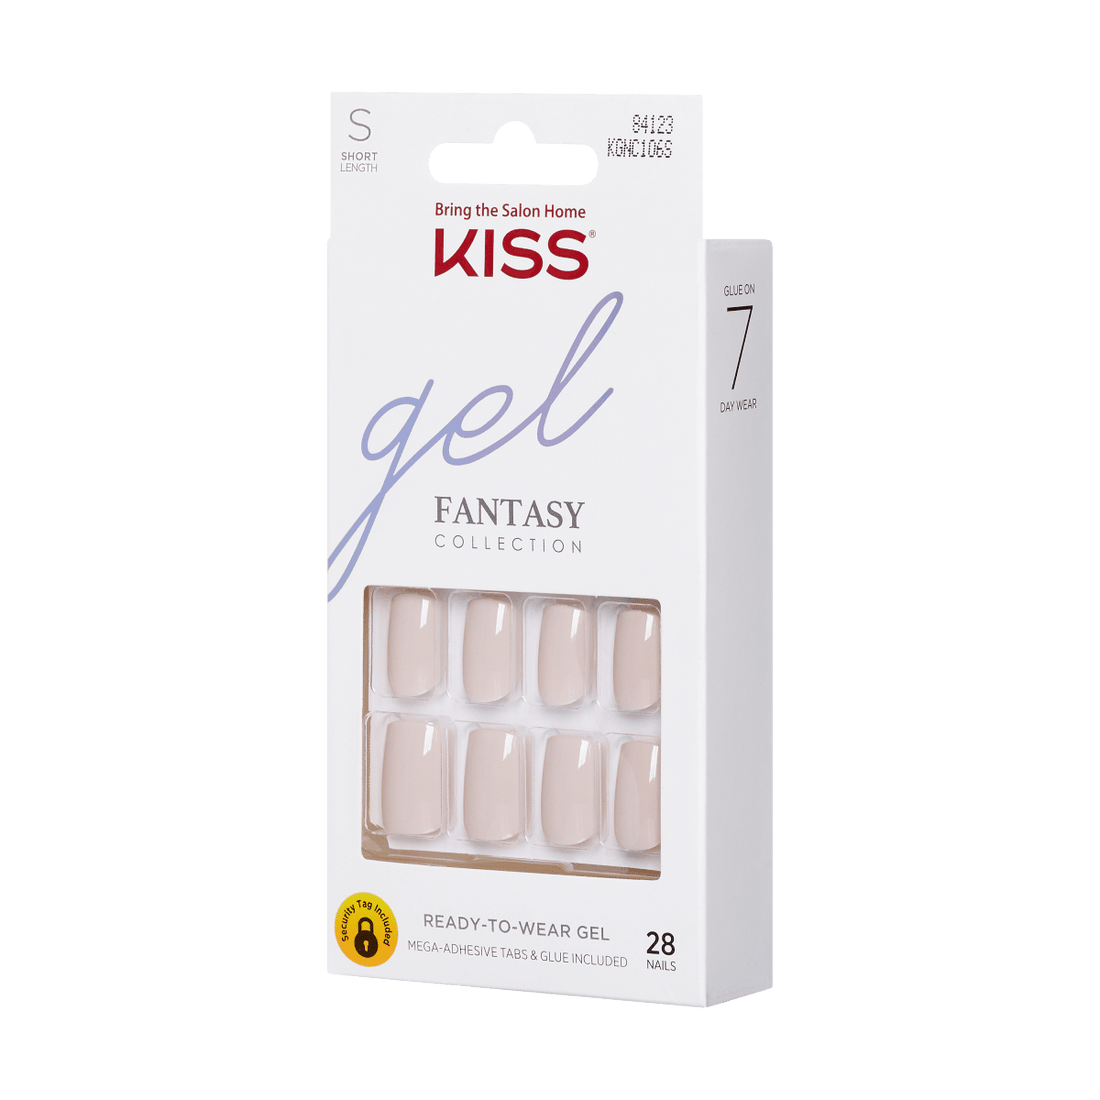 KISS Gel Fantasy Ready-to-Wear Gel Nails - Here I Am